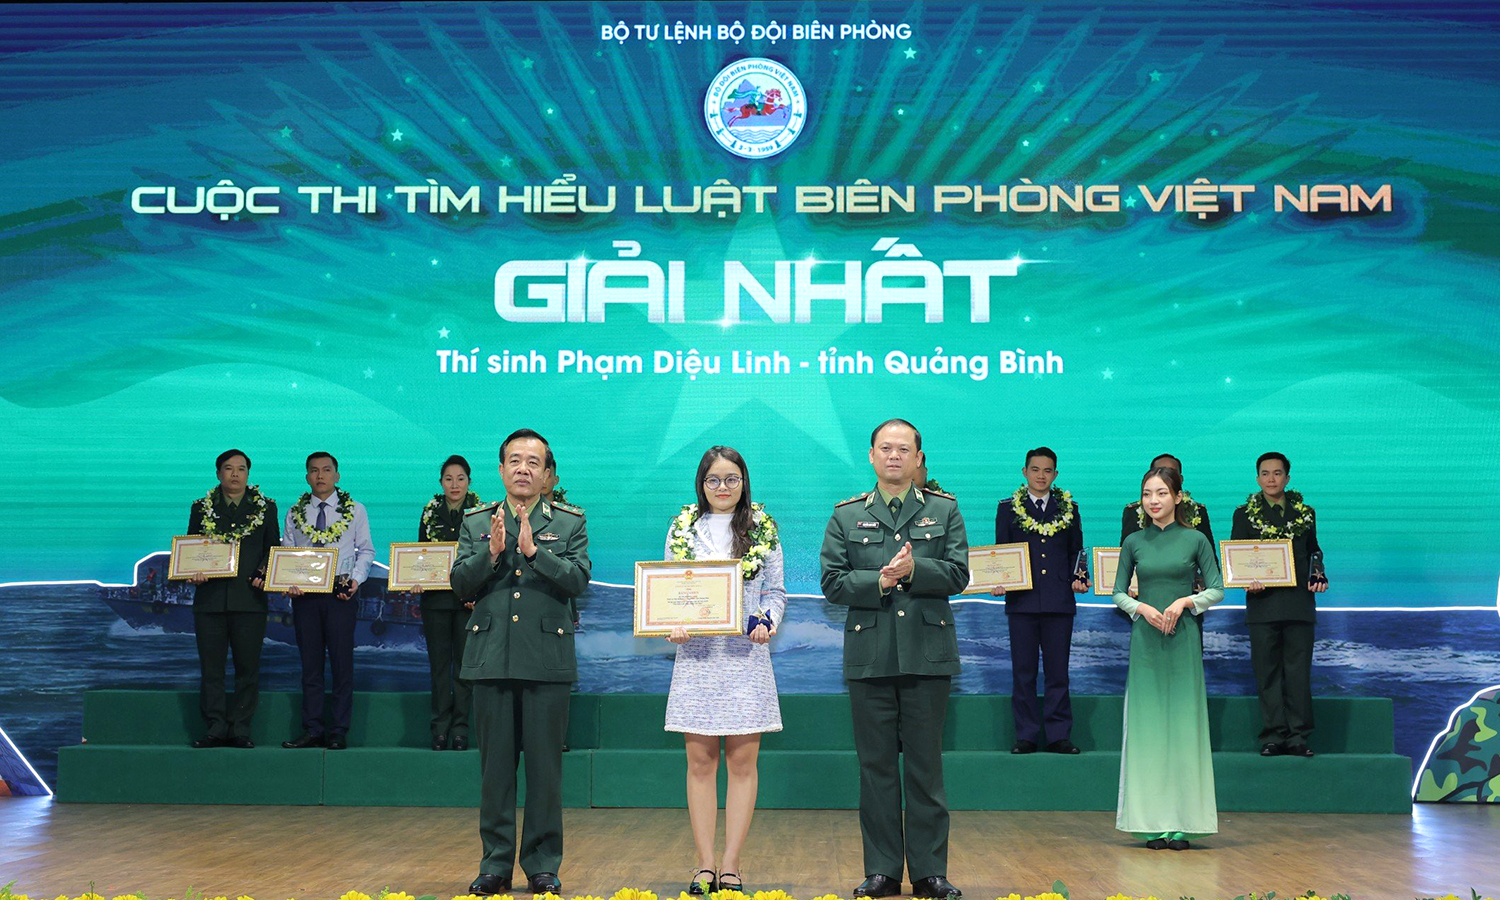 Thí sinh Quảng Bình giành giải nhất chung kết cuộc thi trực tuyến "Tìm hiểu Luật Biên phòng Việt Nam"